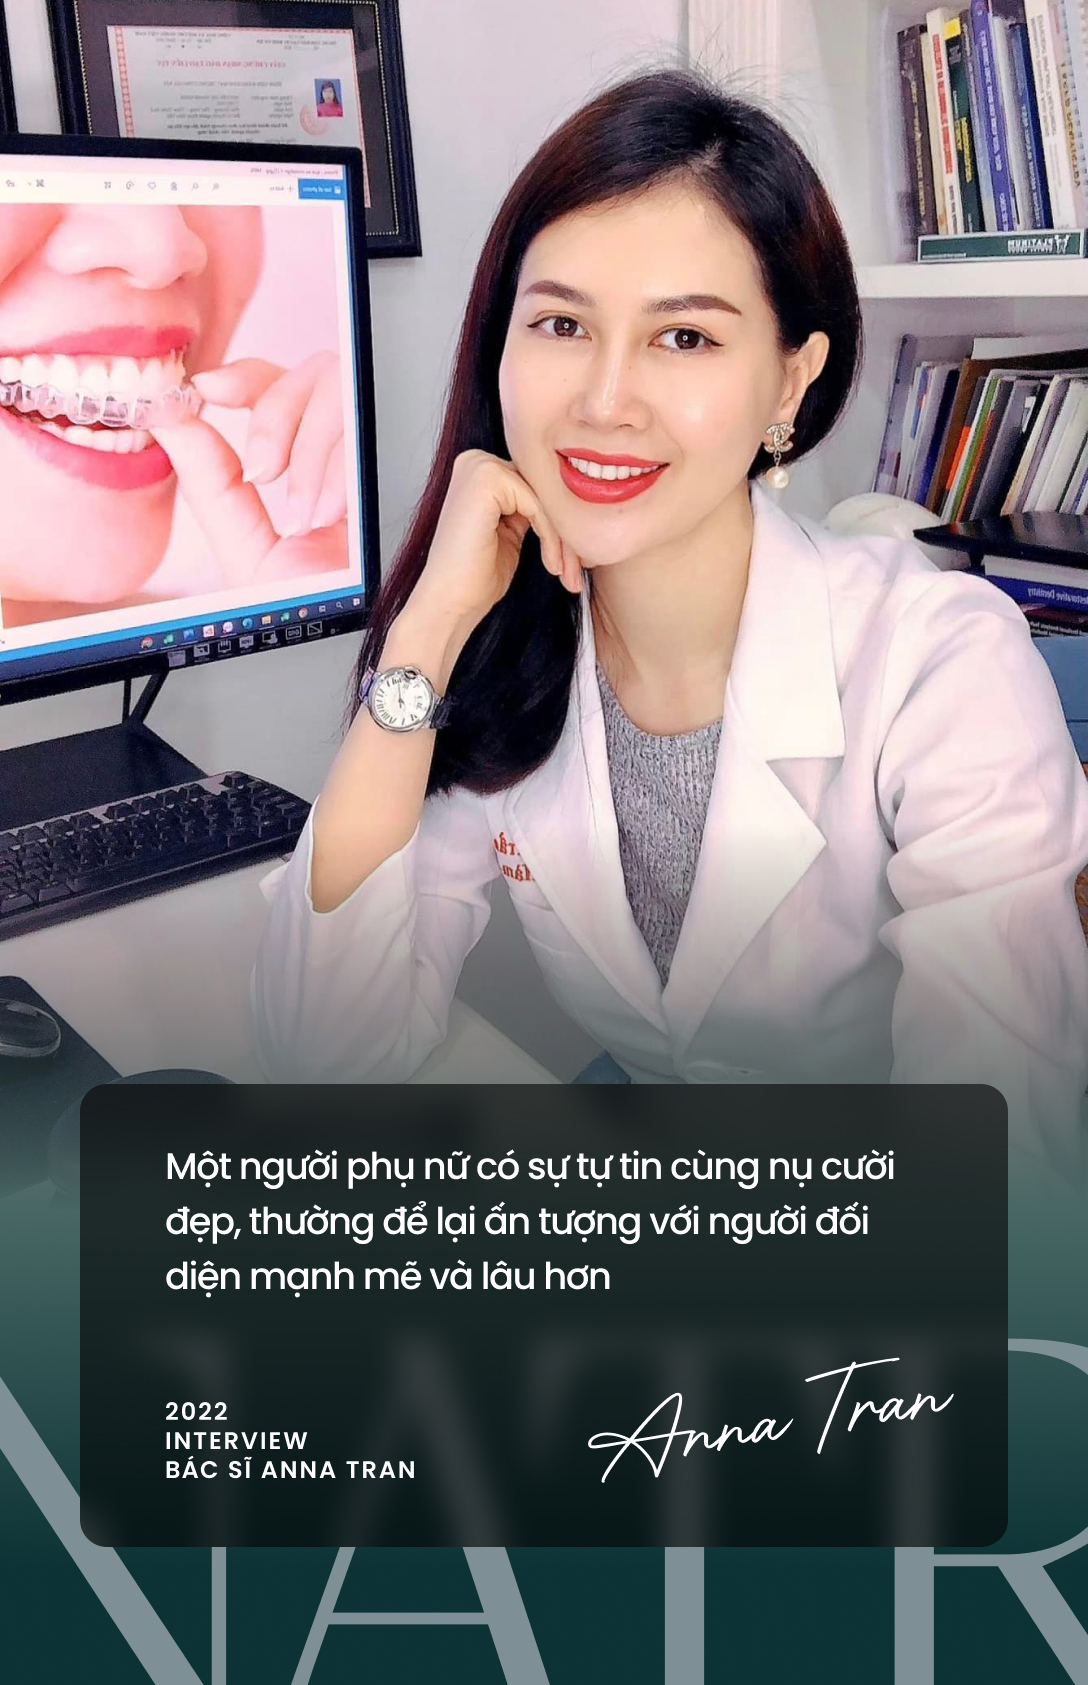 Nữ bác sĩ Anna Trần và câu chuyện về nhiều người có xu hướng &quot;tìm lại nụ cười&quot; dù đã có ngoại hình đẹp - Ảnh 1.